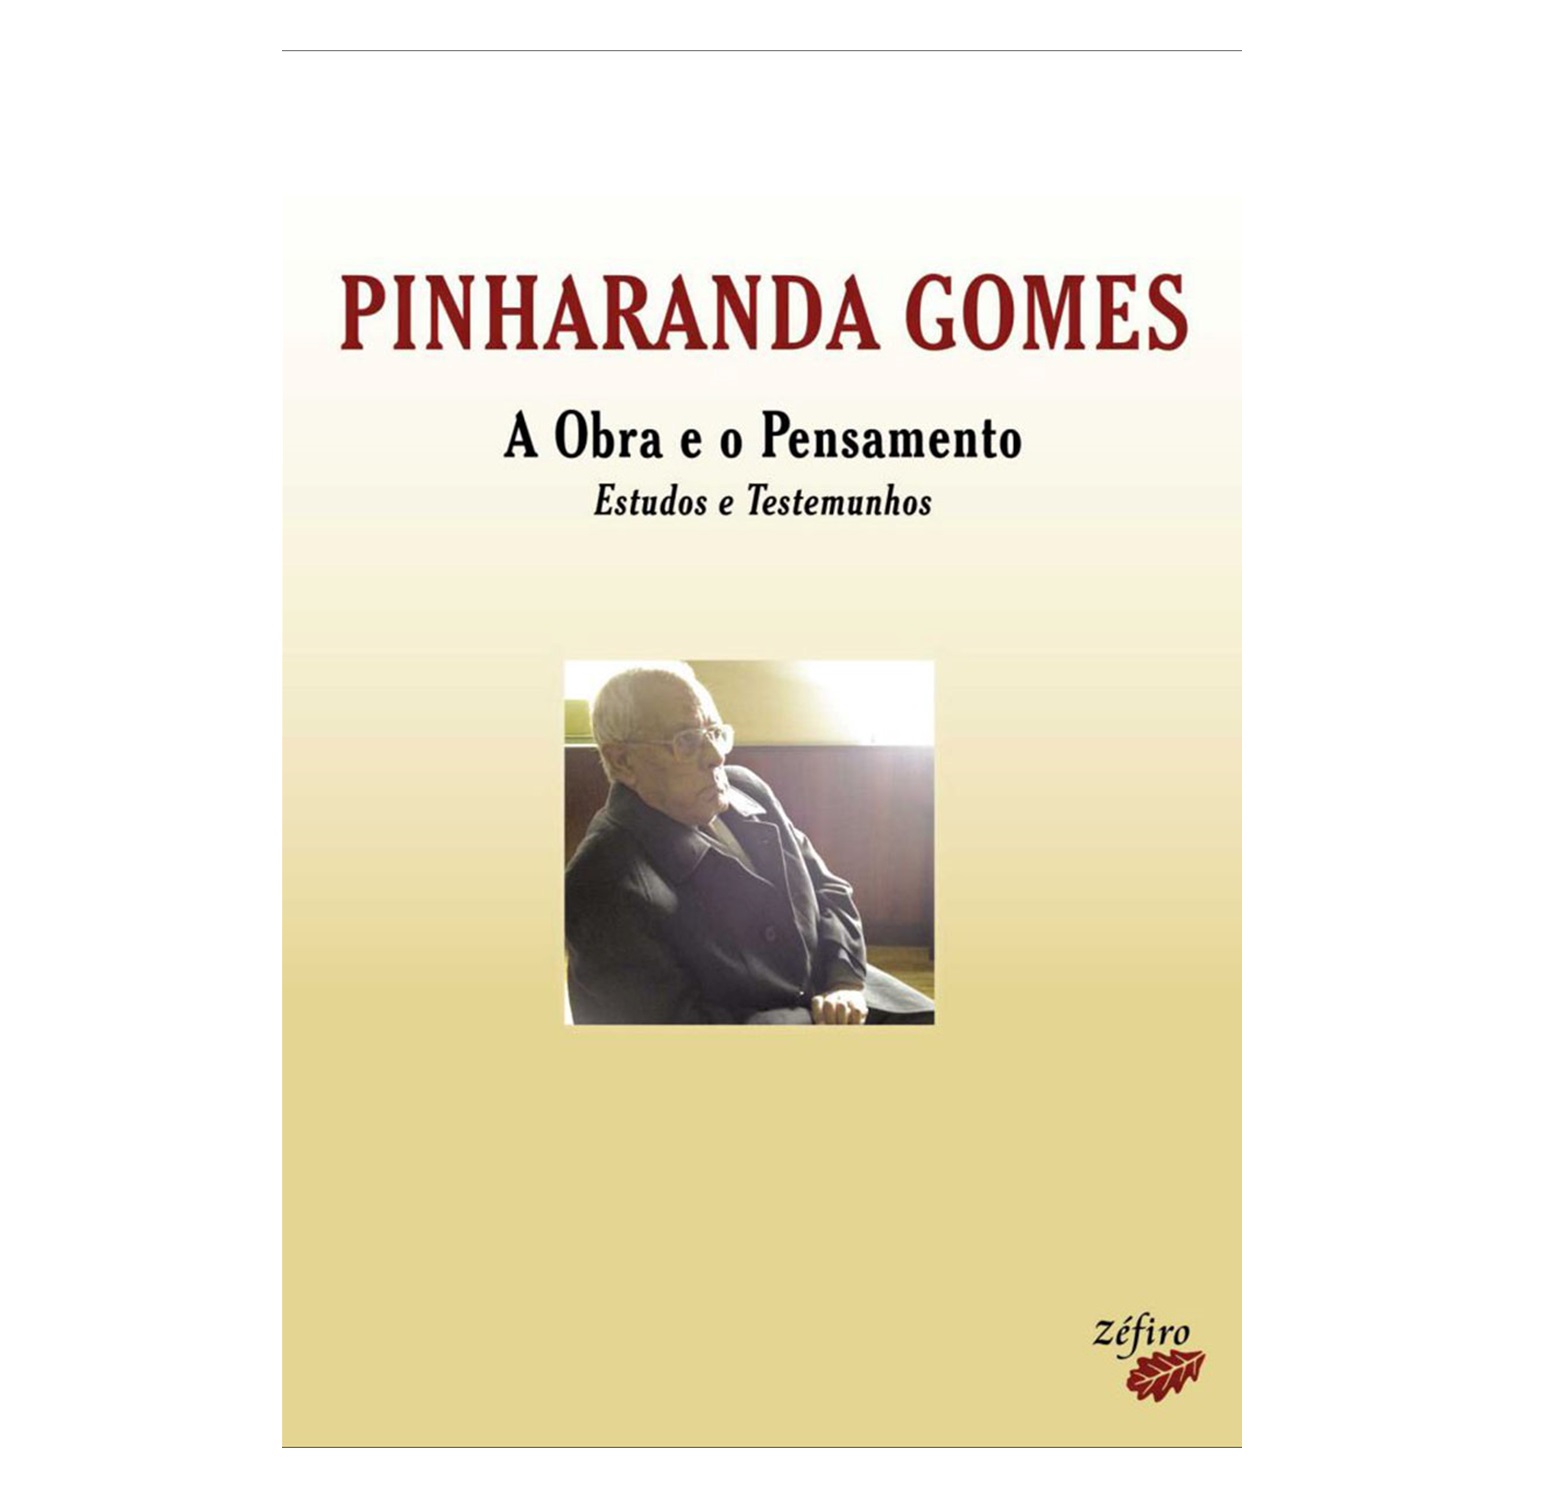 PINHARANDA GOMES: A OBRA E O PENSAMENTO: ESTUDOS E TESTEMUNHOS